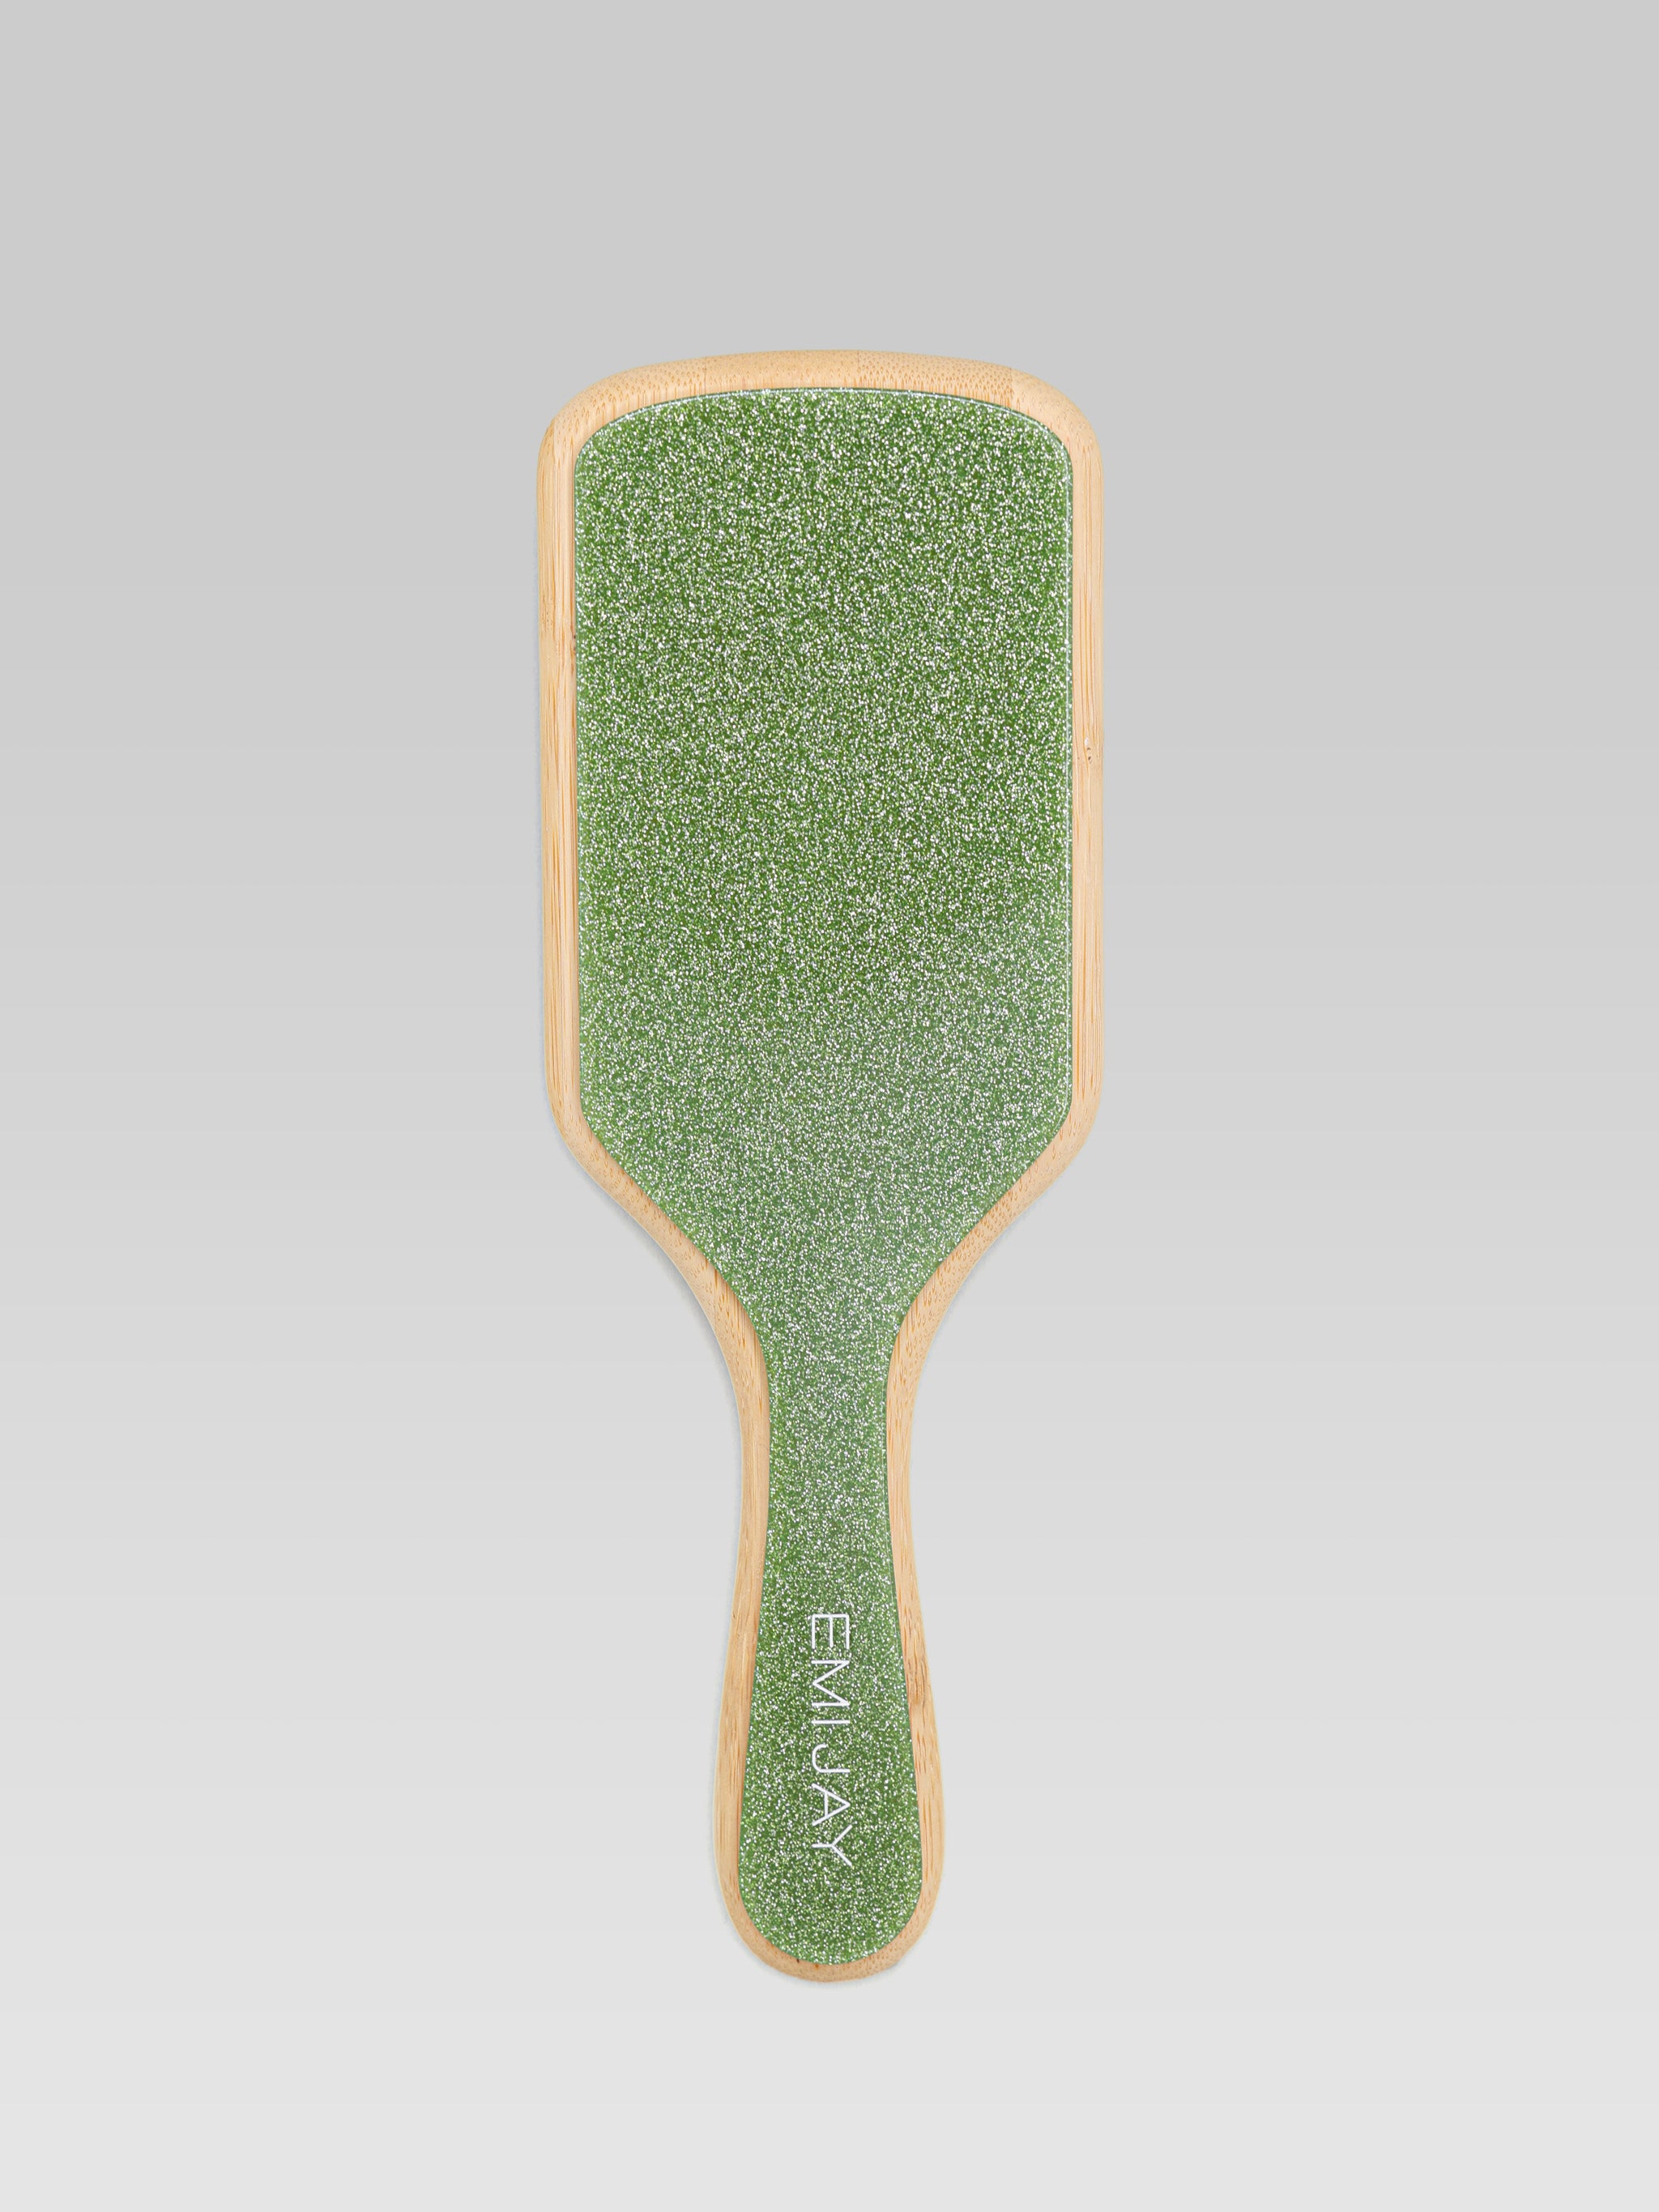 Emi Jay Bamboo Paddle Brush virgo product shot 